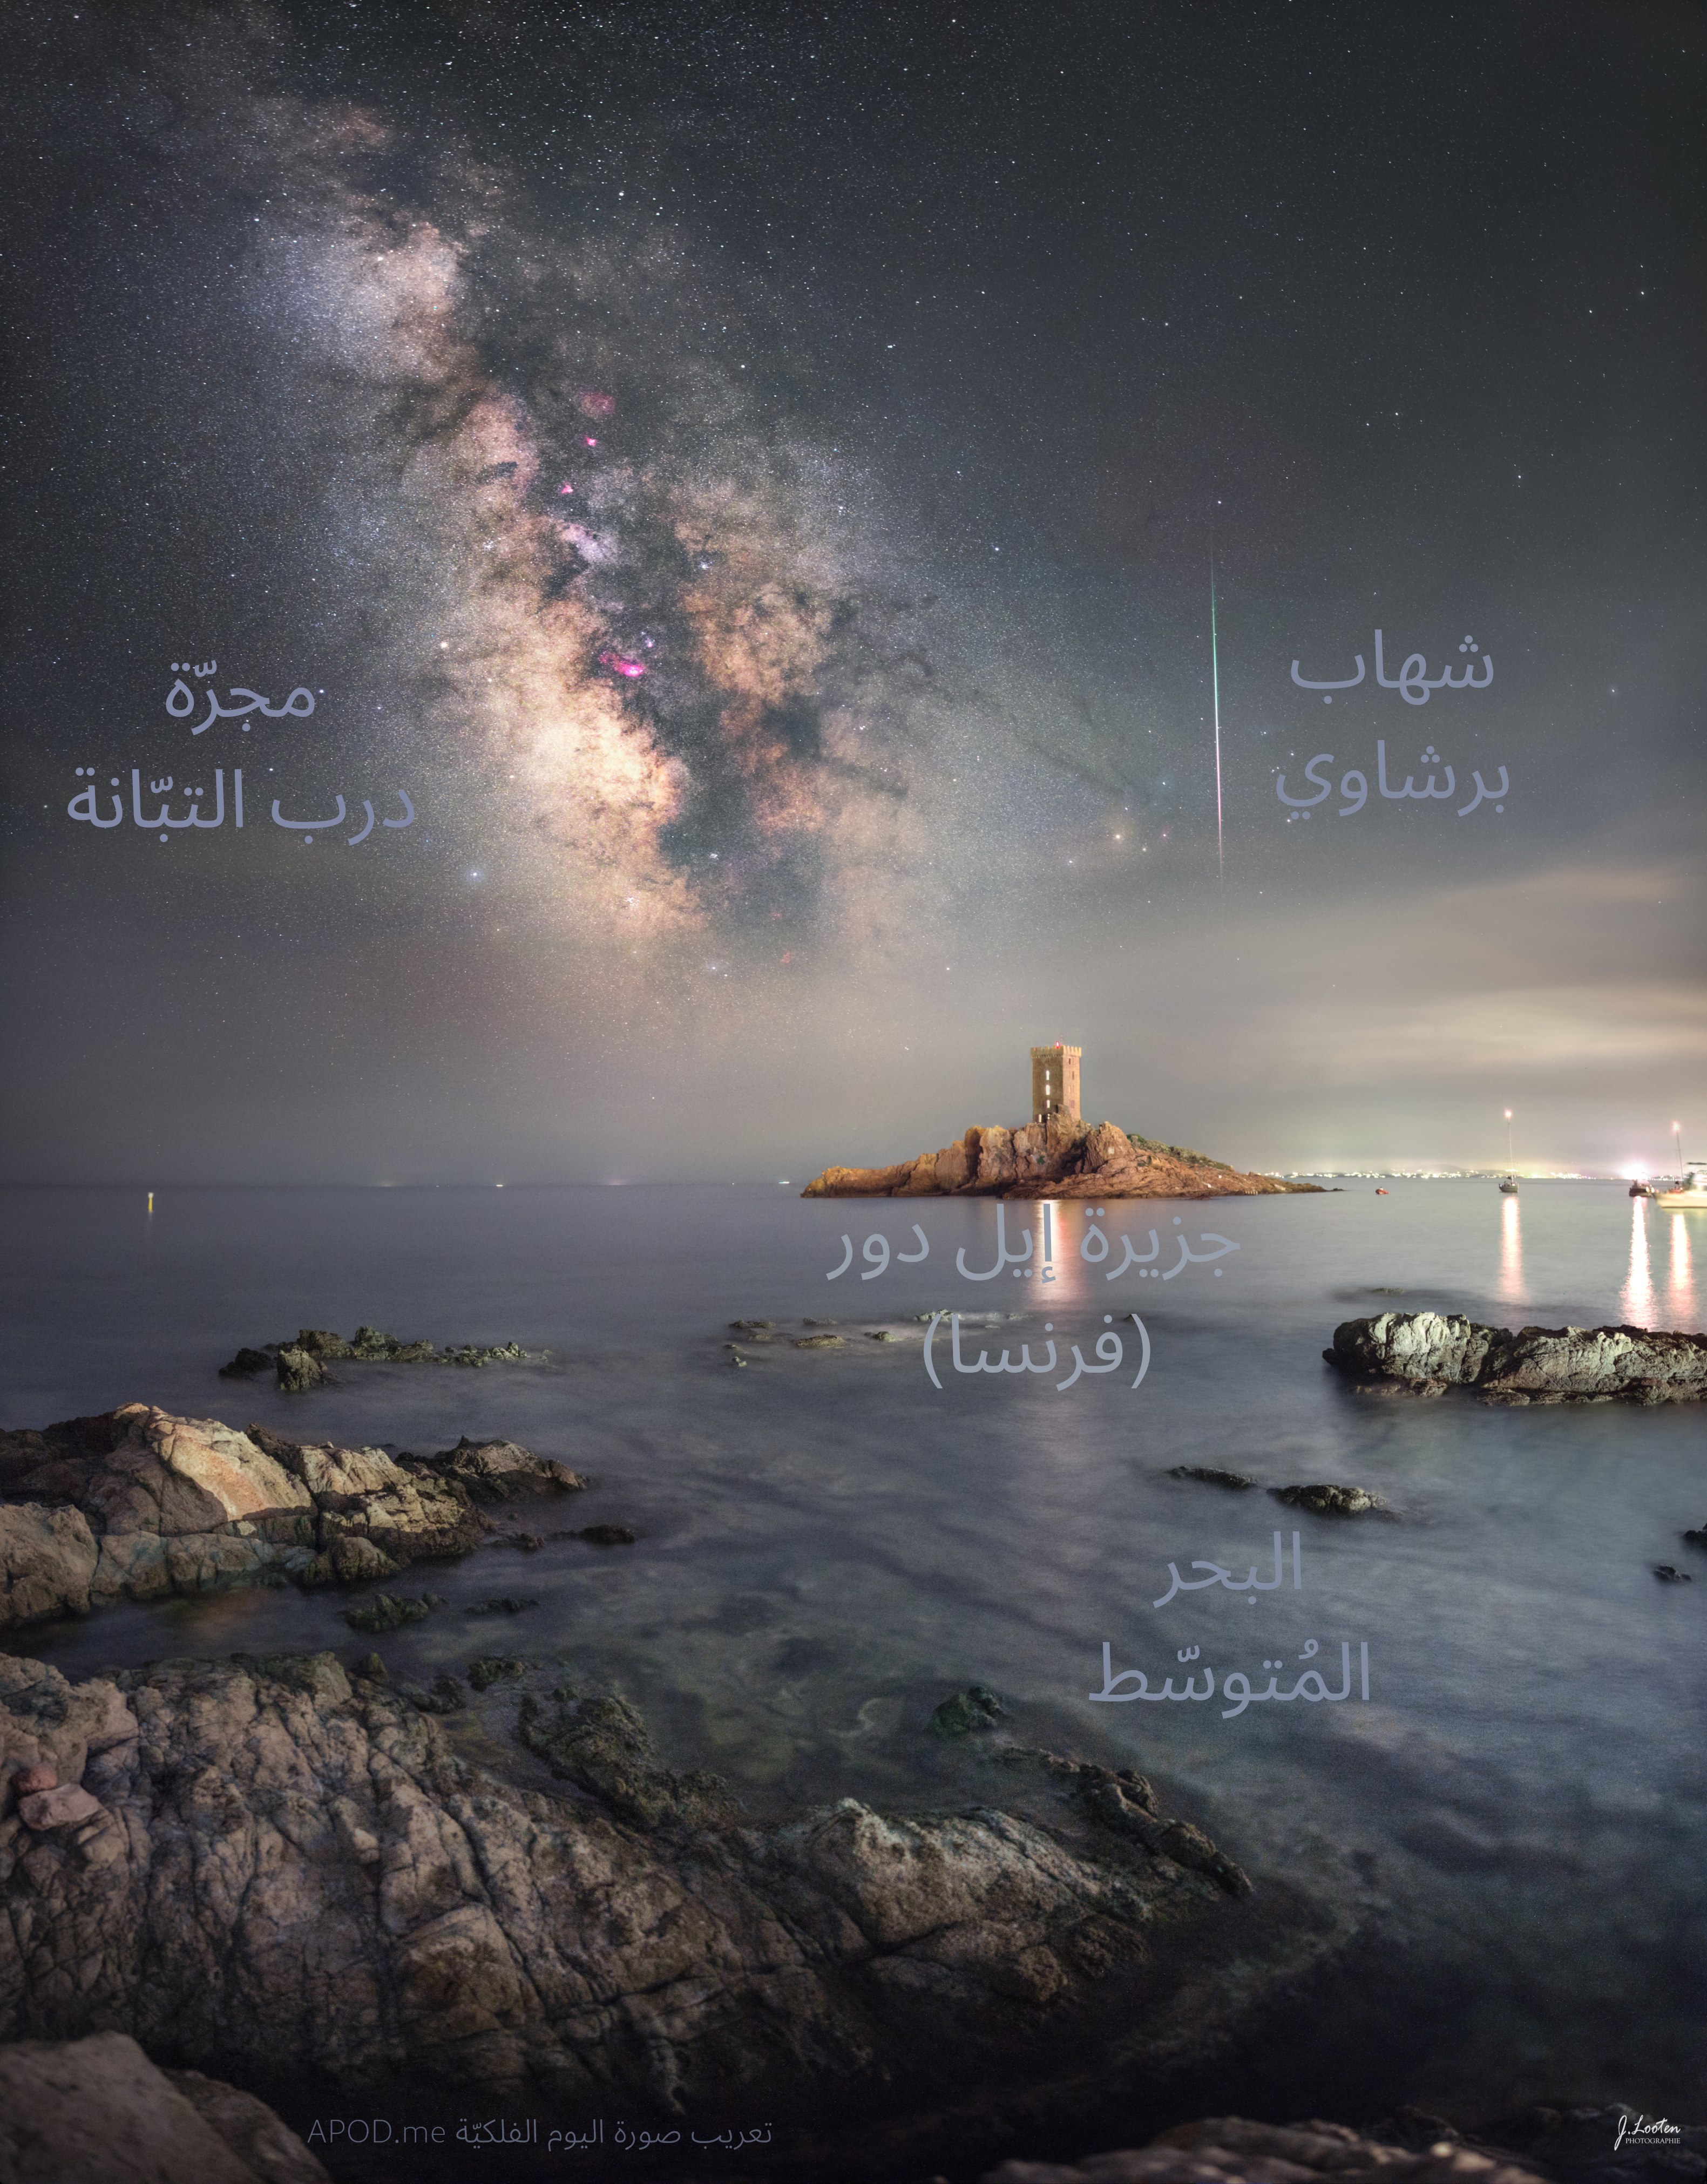 نسخة معنونة من الصورة وضّح فيها الشهاب والمجرّة والجزيرة والبحر